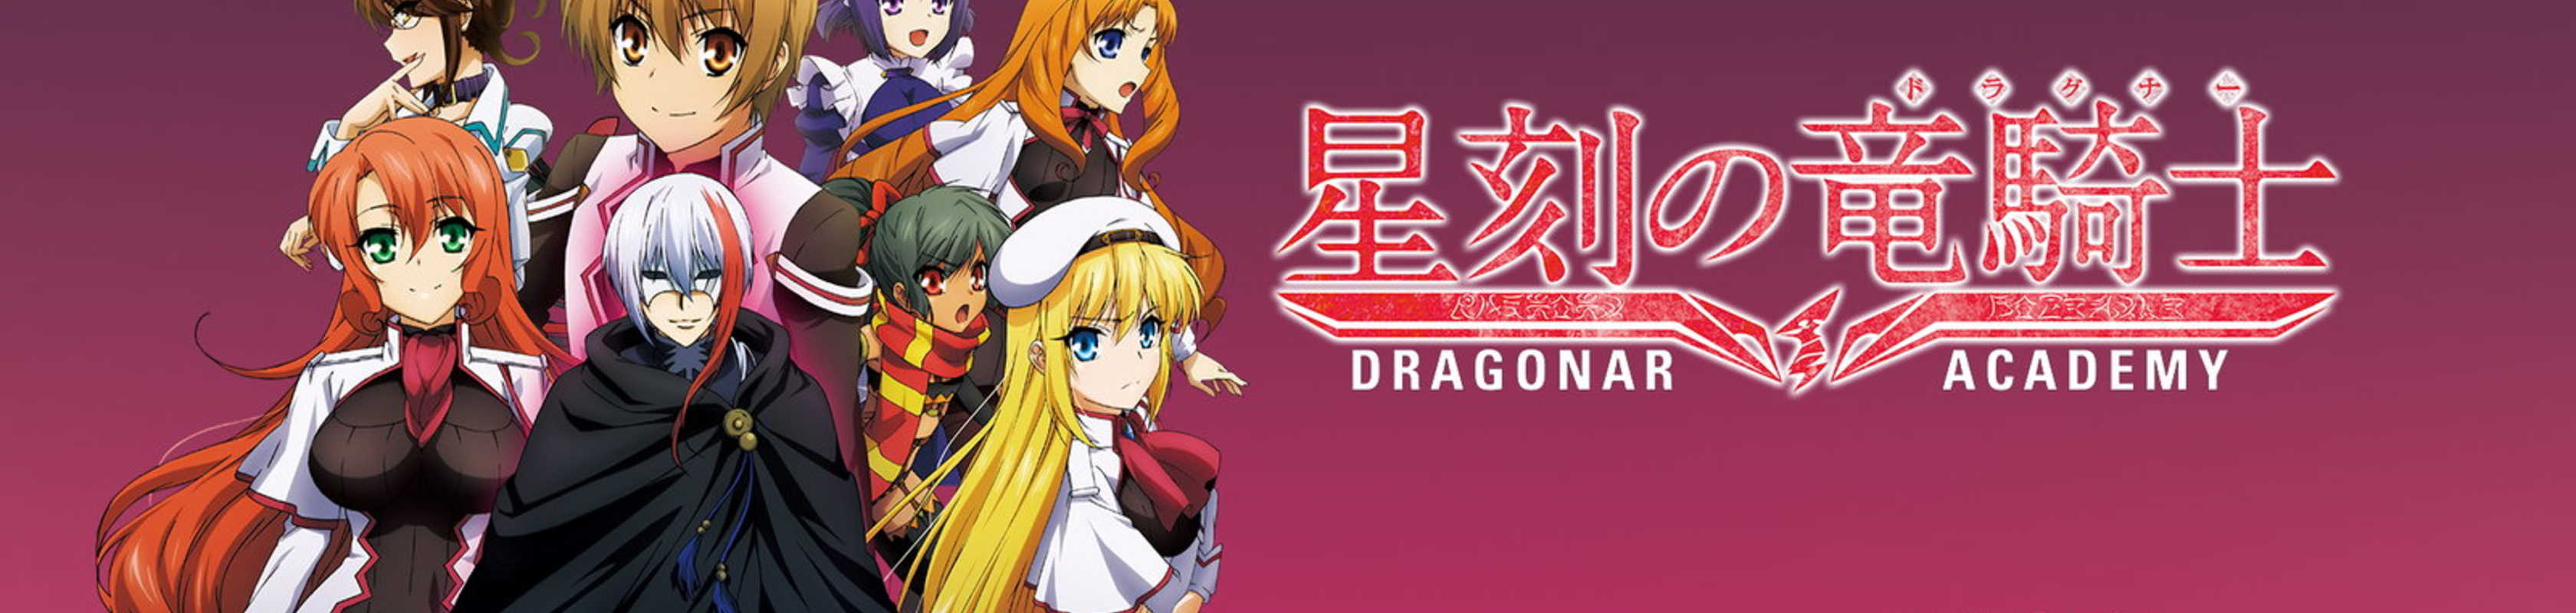 Anime Like Dragonar Academy | AniBrain